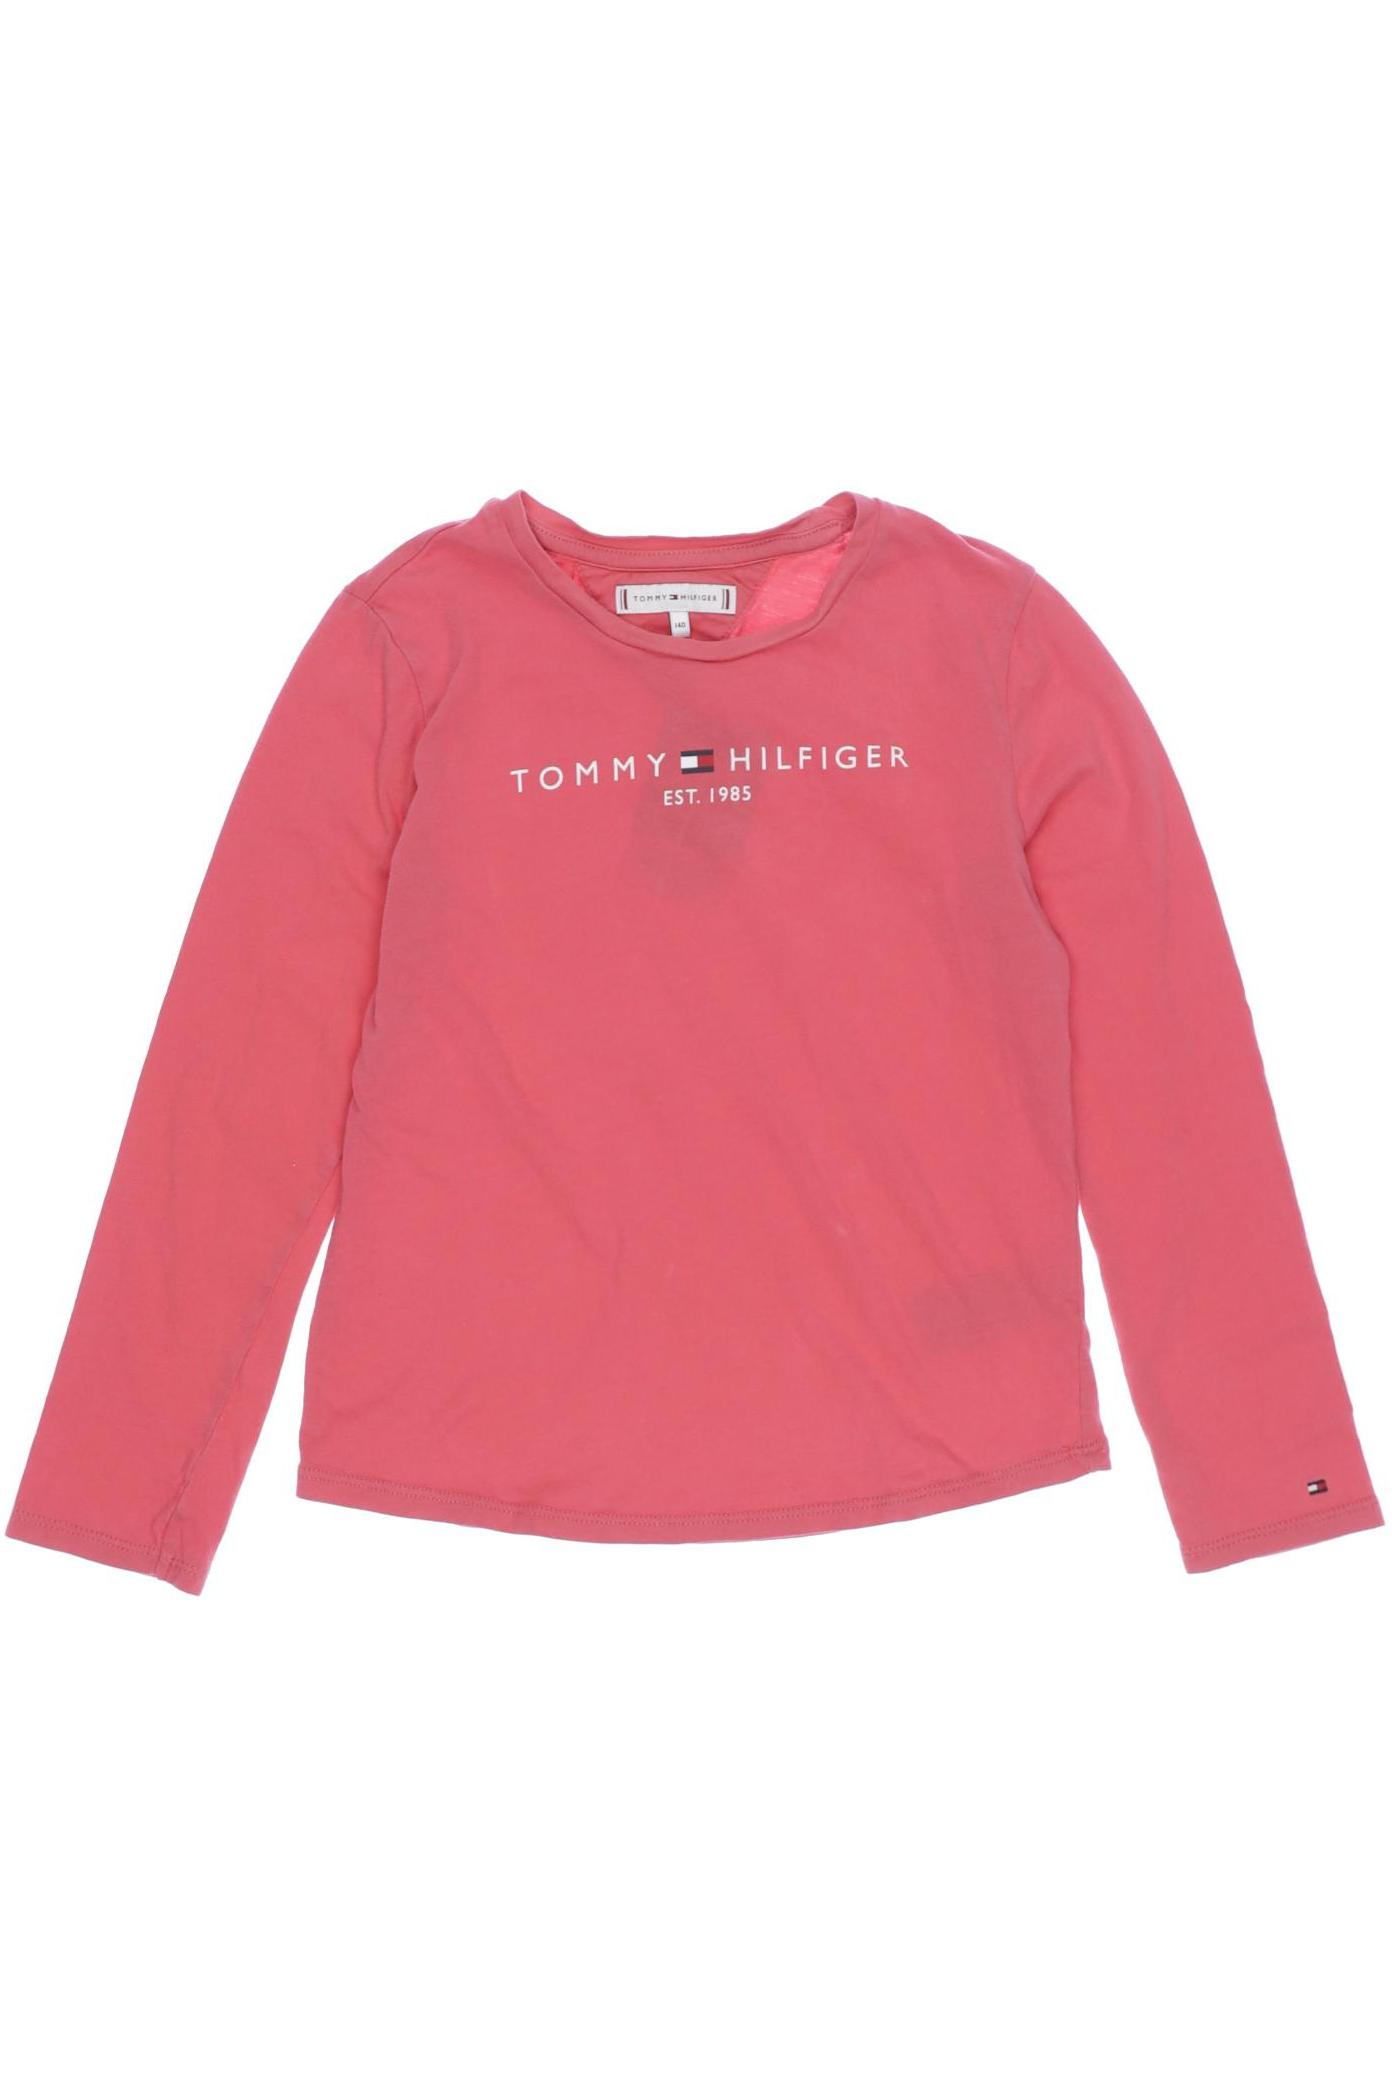 Tommy Hilfiger Mädchen Langarmshirt, pink von Tommy Hilfiger